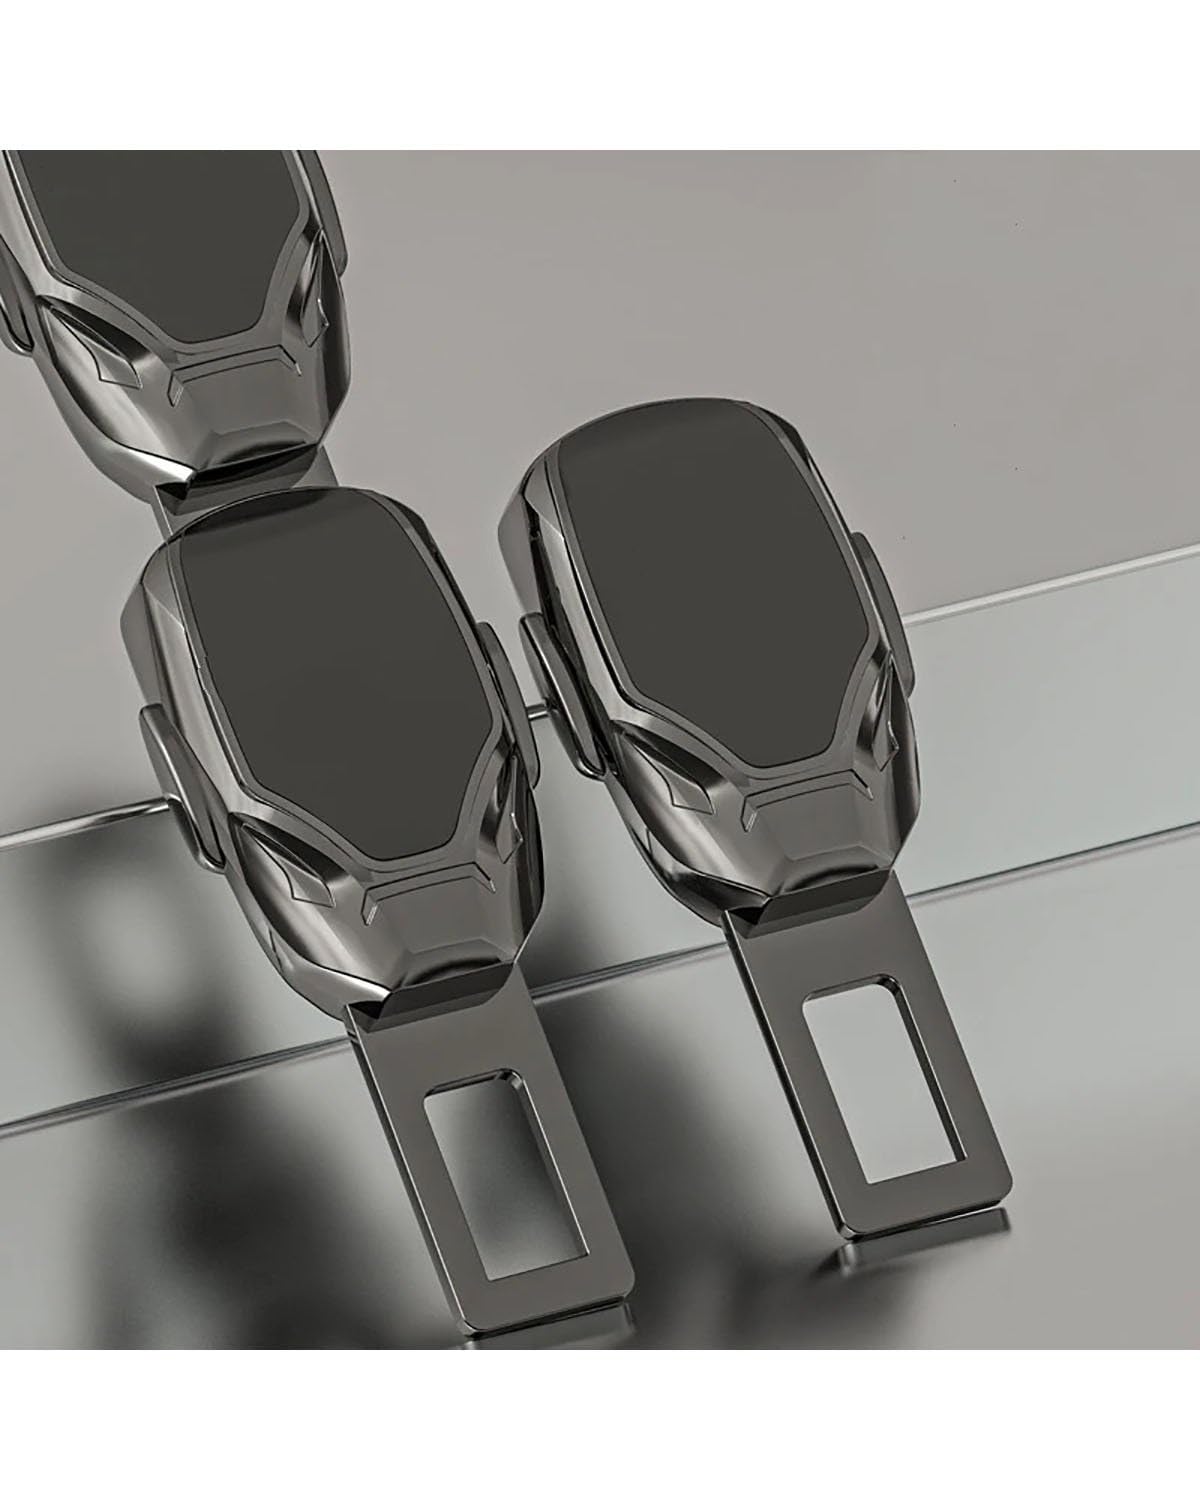 Anschnaller Verlängerung Für Hyundai Für HB20 Ix25 Für Creta 2012-2017 2018 2019 2020 Autositzgurt-Verlängerungsstecker Schnalle Sicherheitsgurtclip Einstellbarer Extender Sicherheitsgurtverlängerun von SOHINI